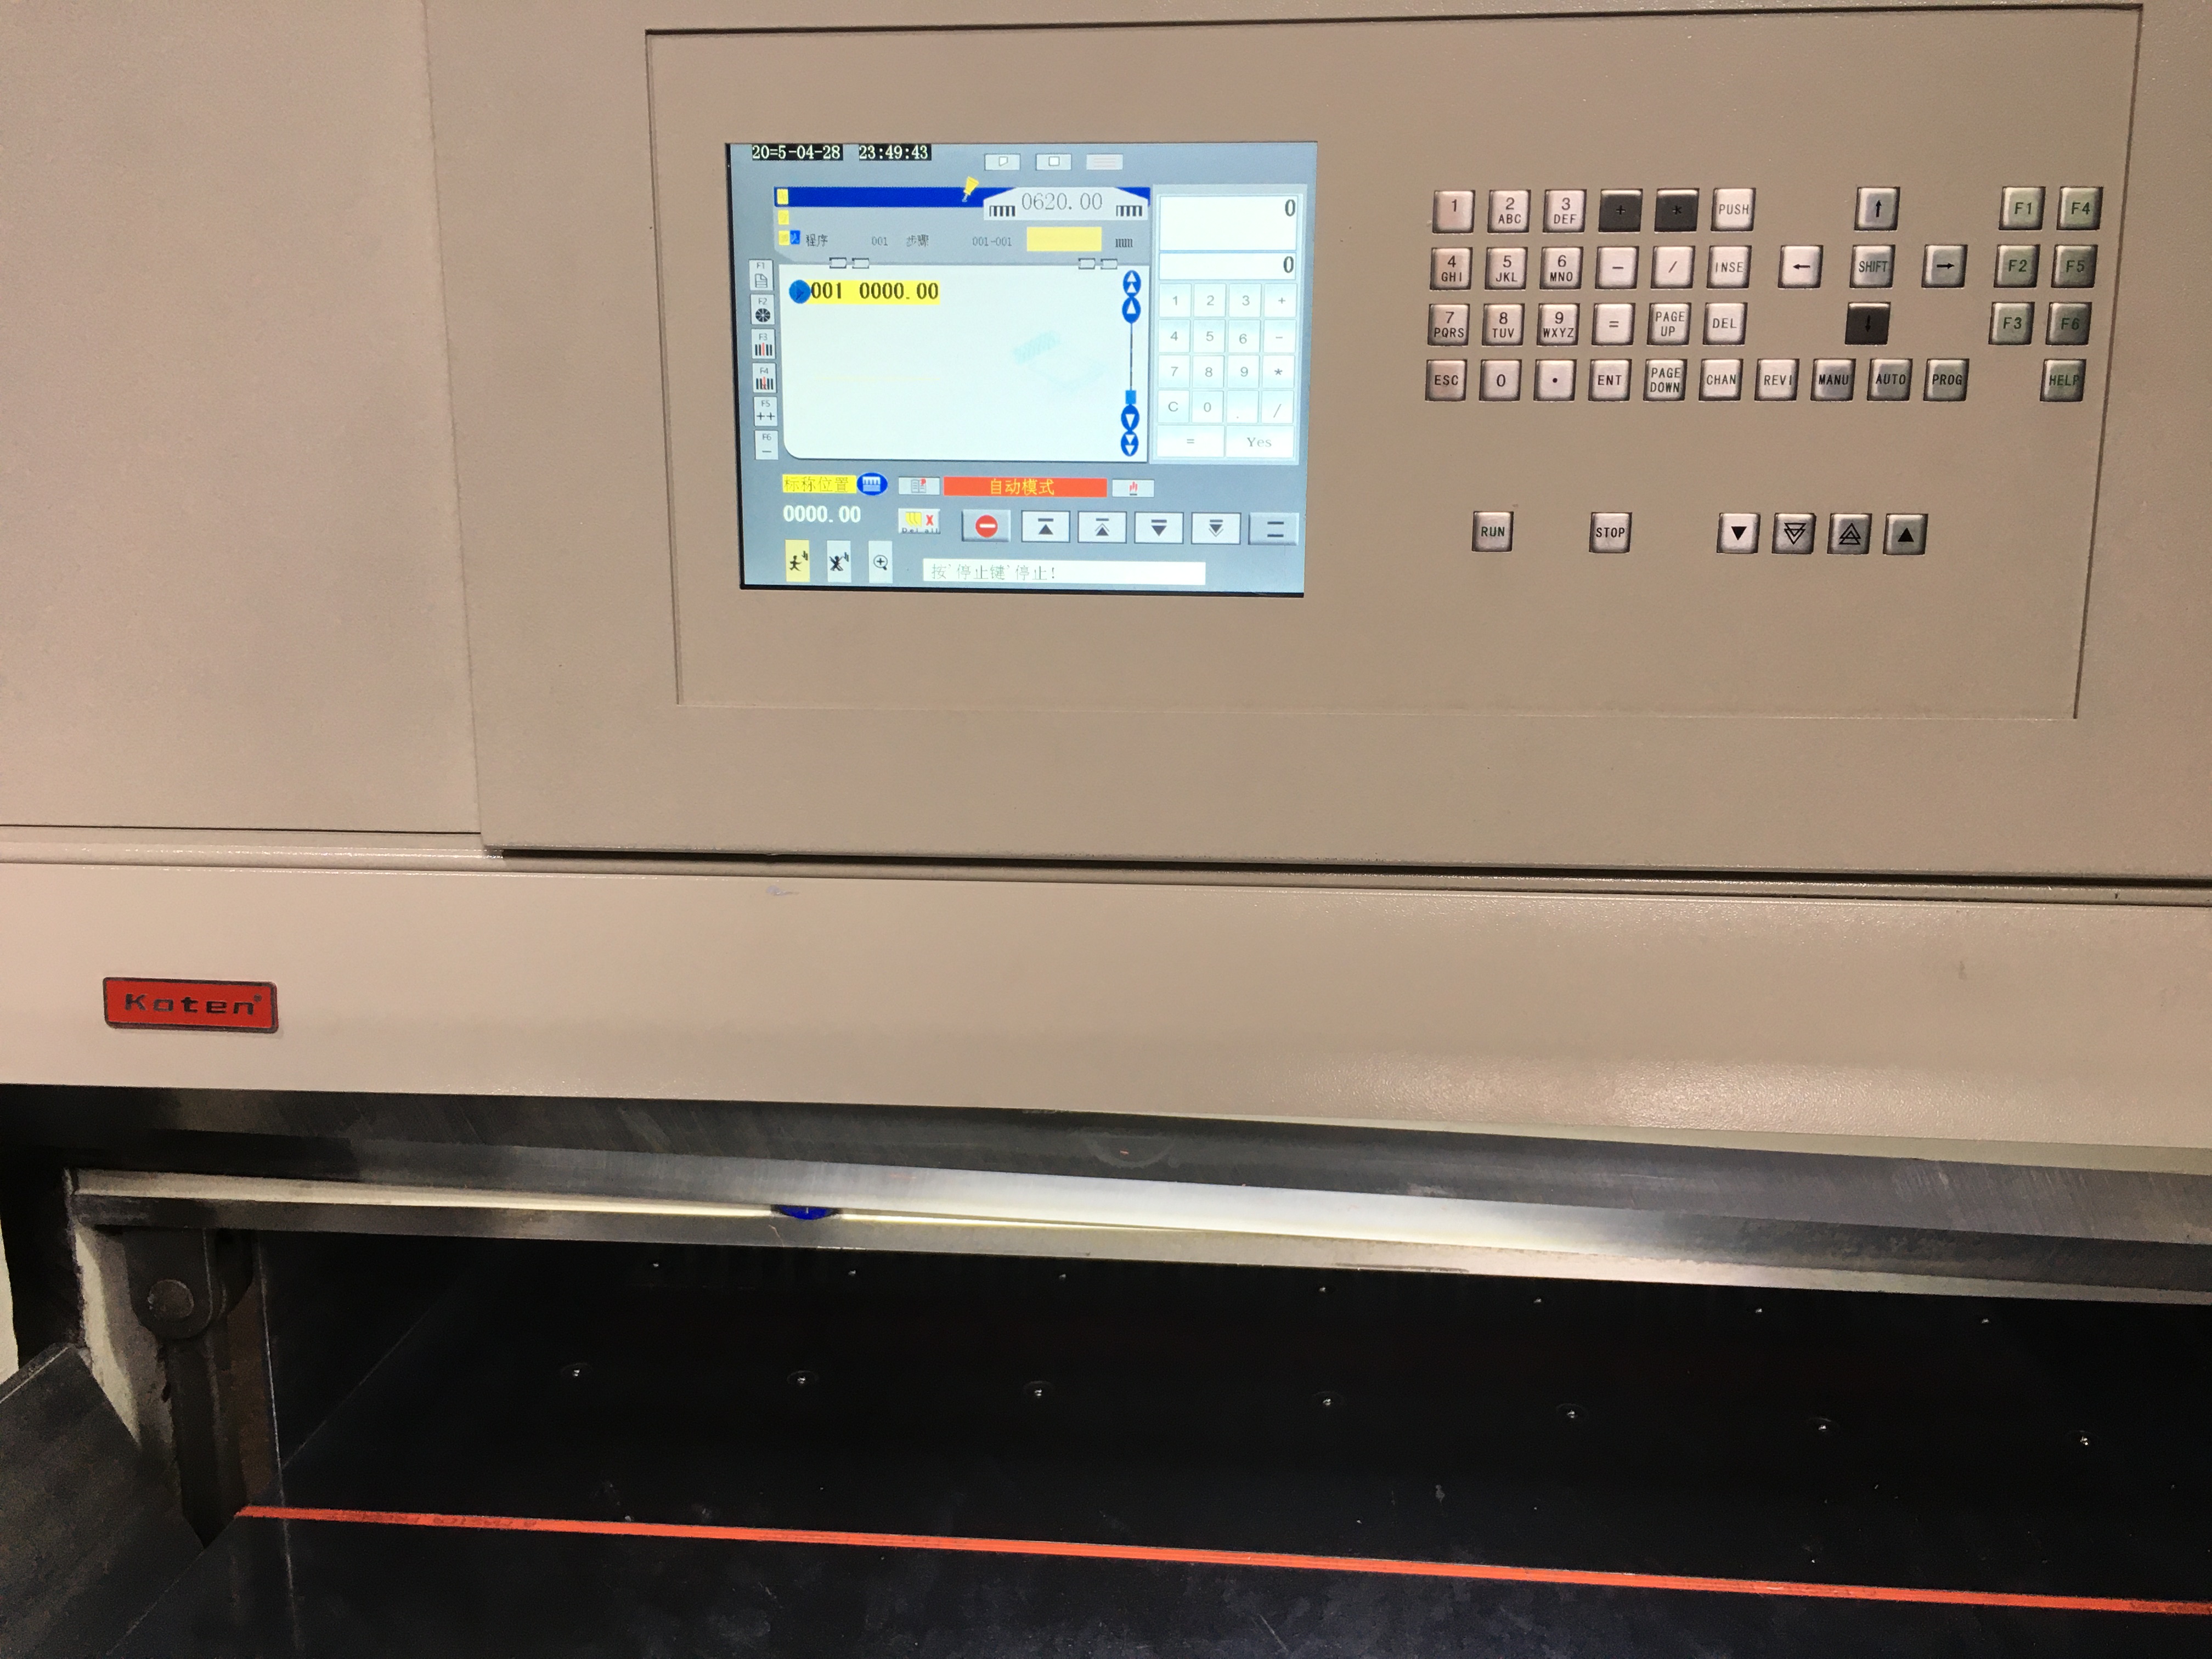 دستگاه گیوتین کاغذی با صفحه نمایش لمسی 10.4 اینچی